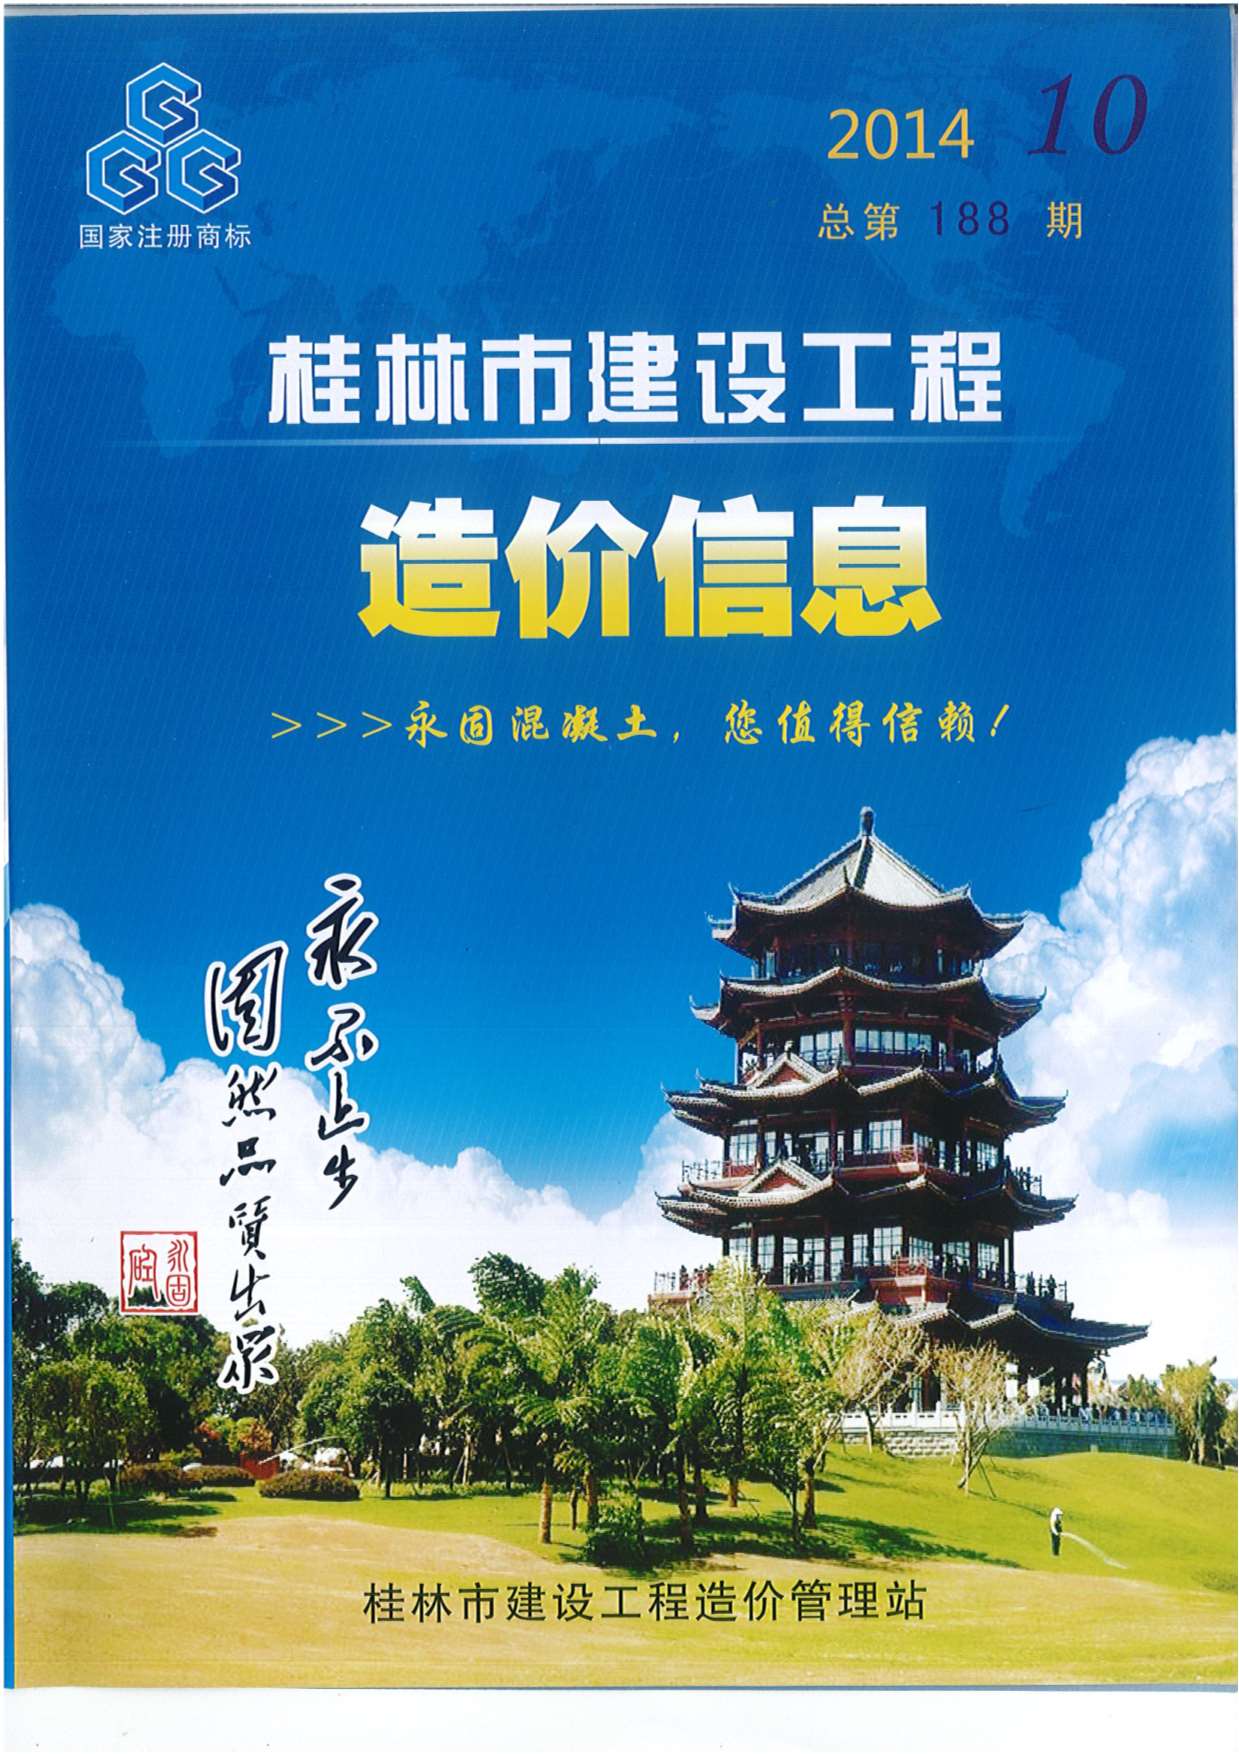 桂林市2014年10月建设工程造价信息